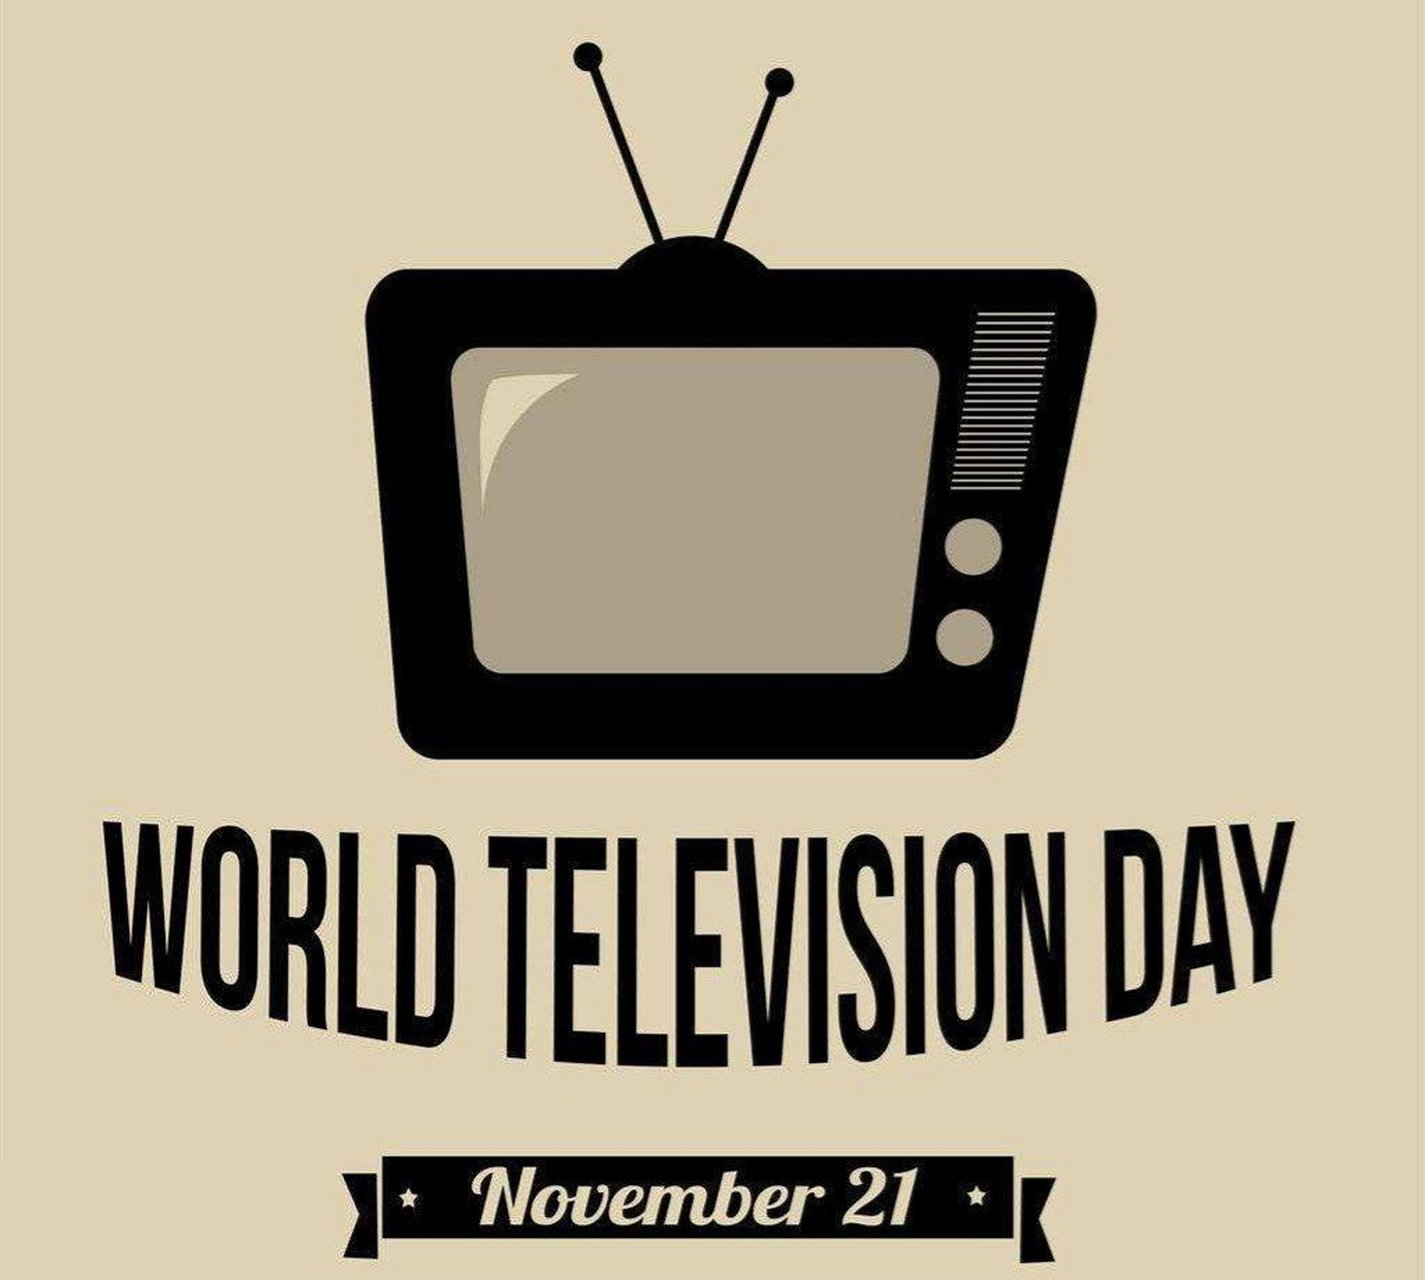 世界电视日 每年11月21日是世界电视日,以此促进世界传媒事业的发展